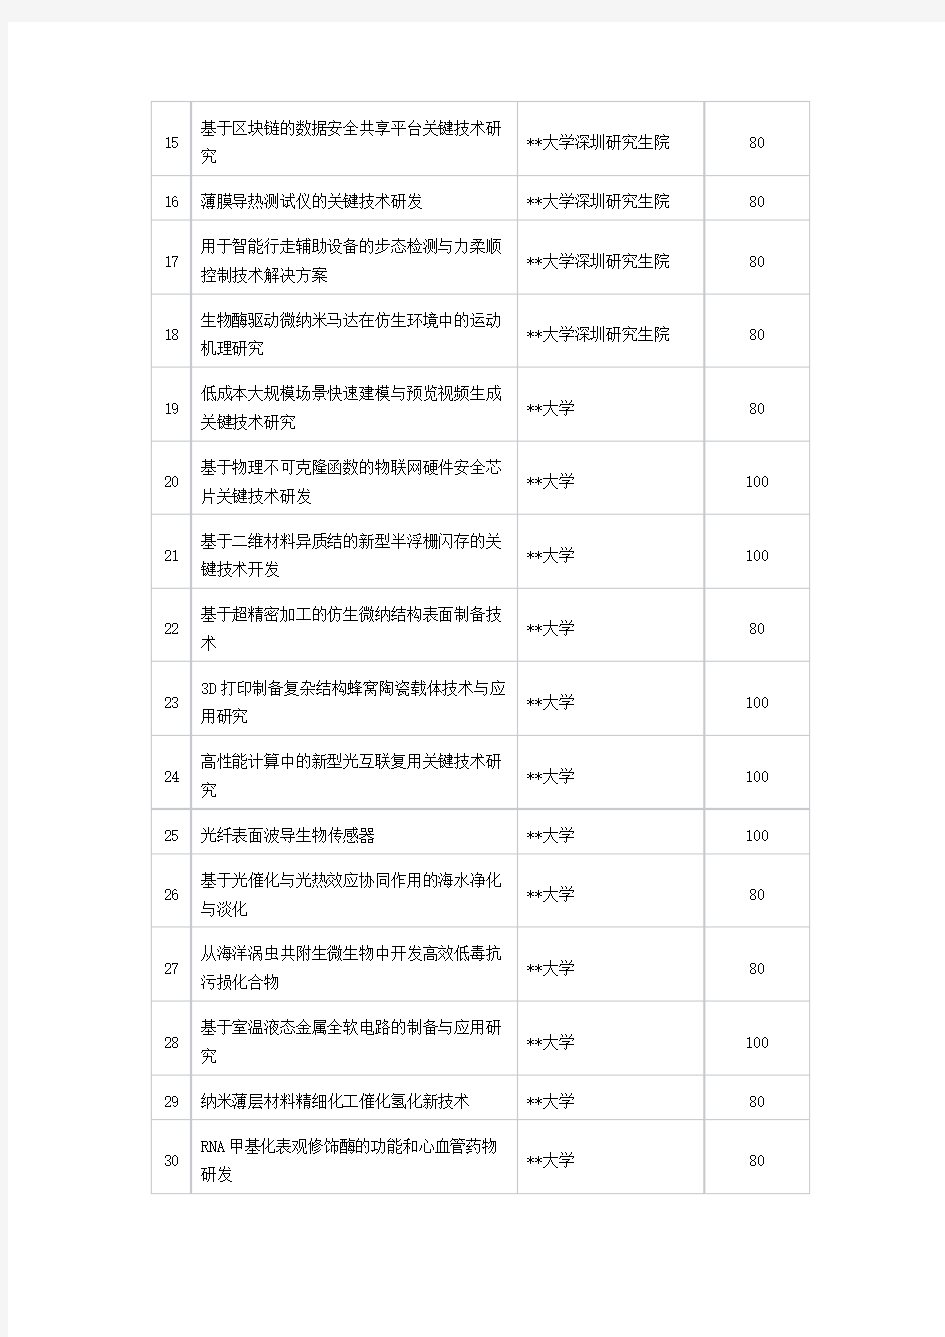 2018年度深圳市海外高层次人才创新创业专项资金技术创新项目拟资助名单【模板】